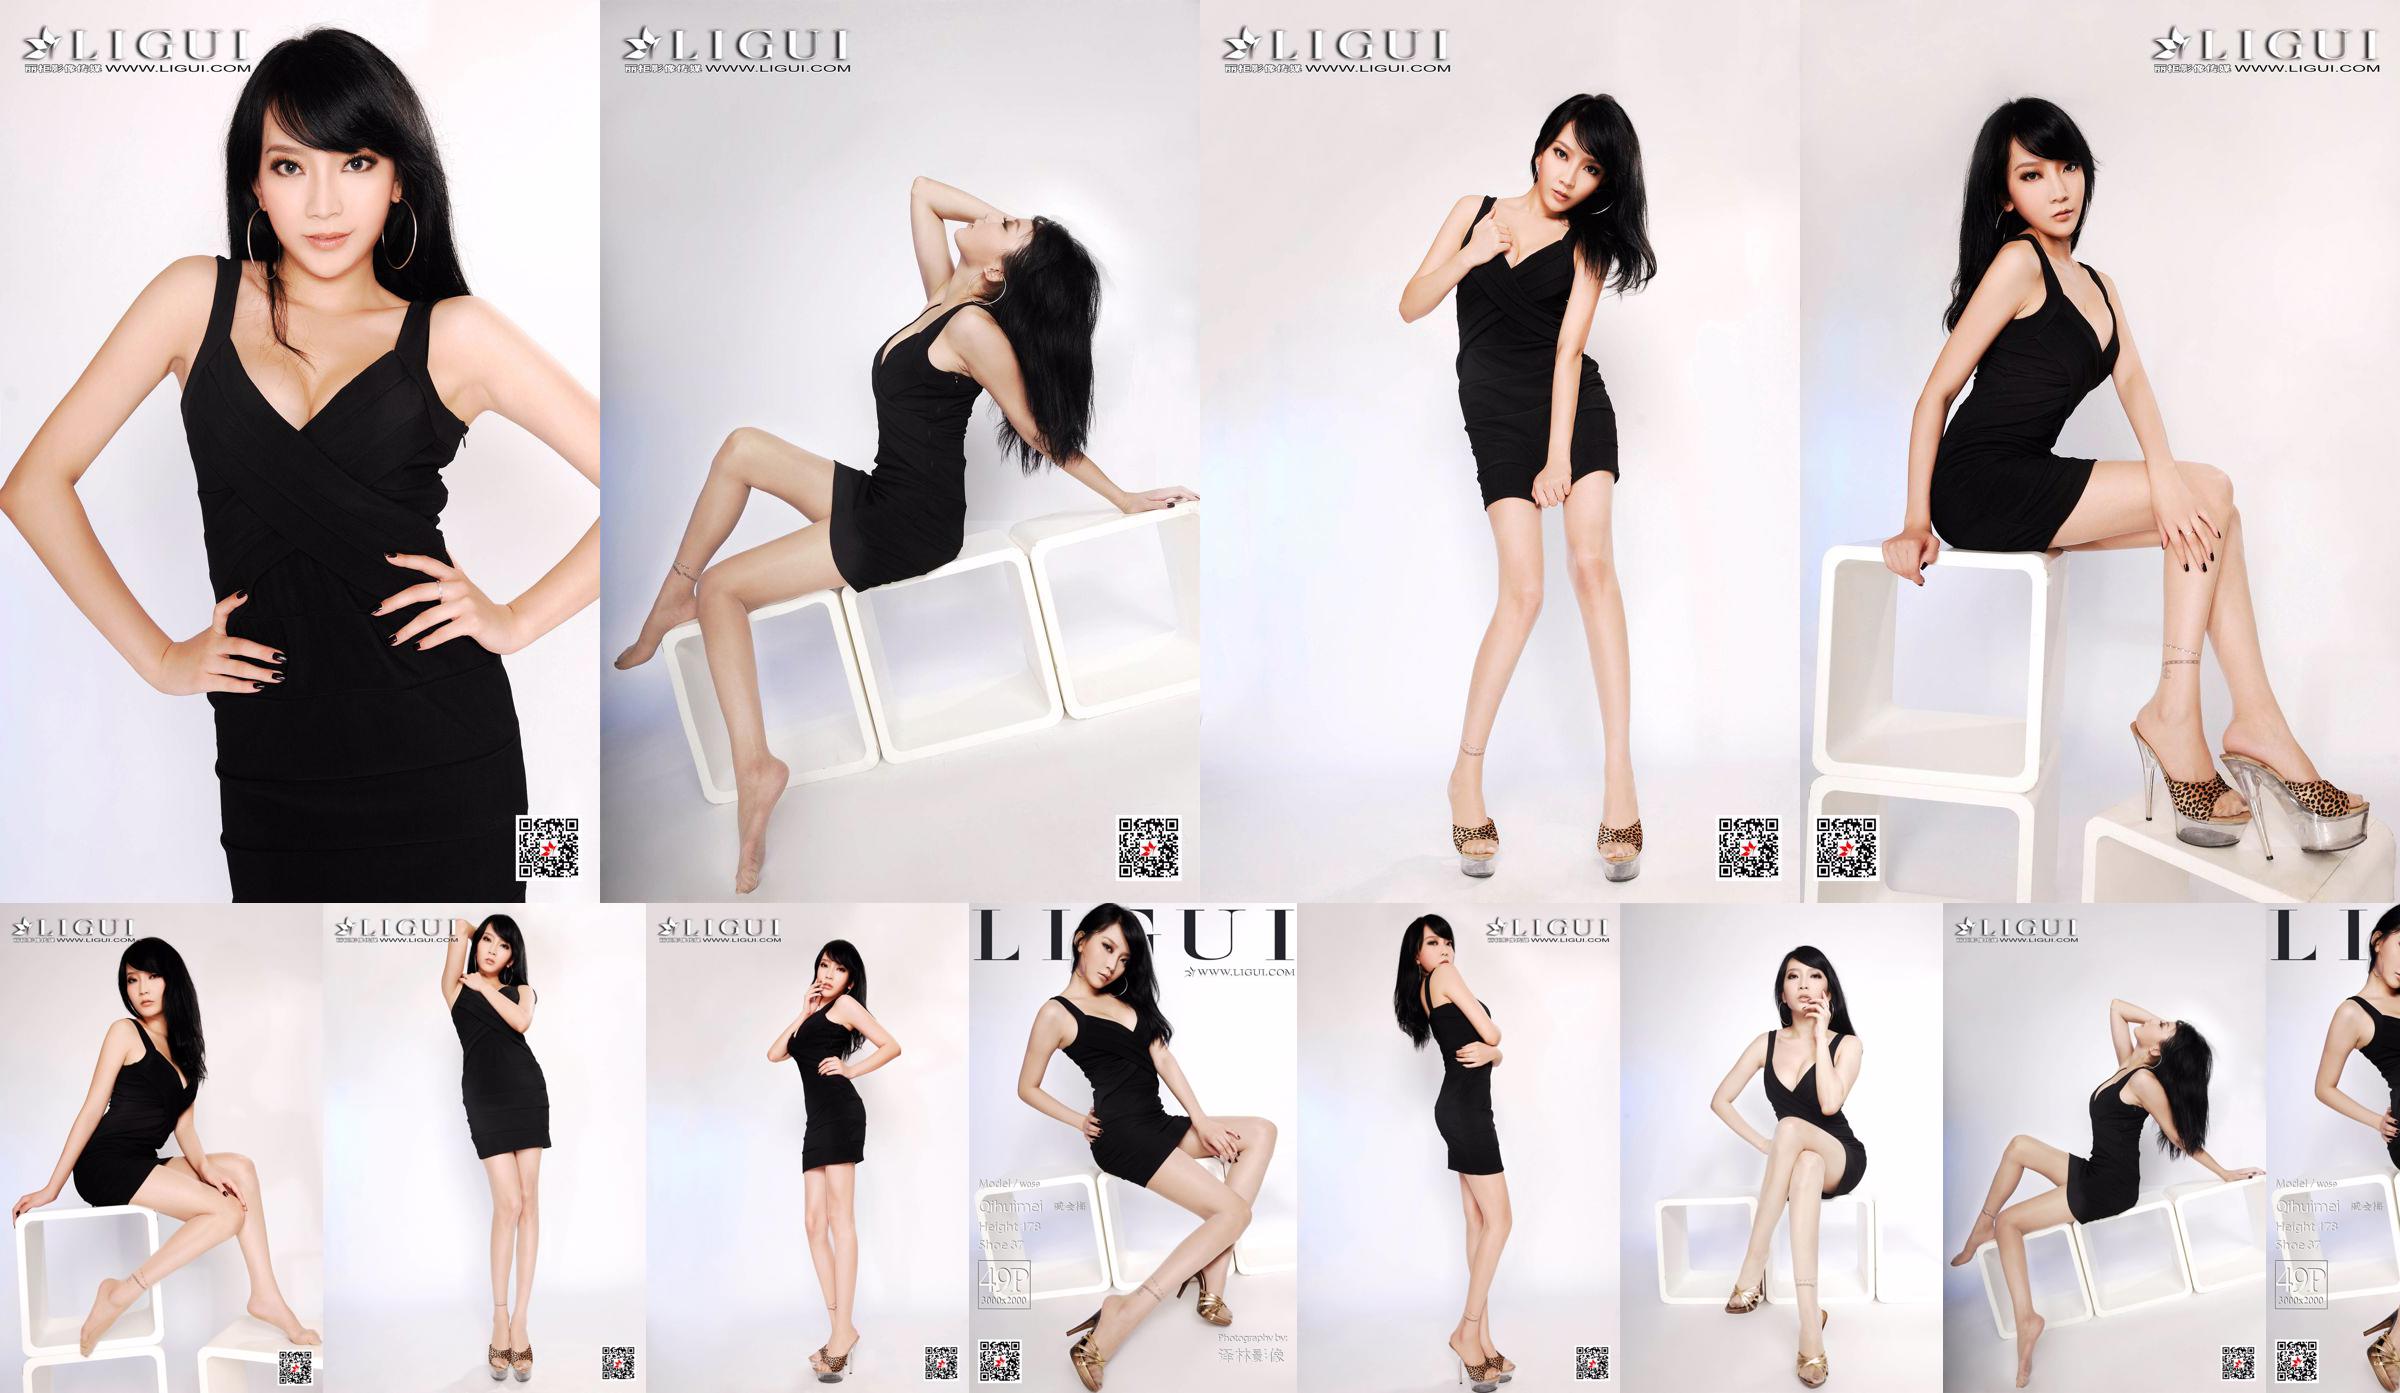 Người mẫu Qi Huimei "Chụp chân heo trong studio" [丽 柜 Ligui] No.57301d Trang 25